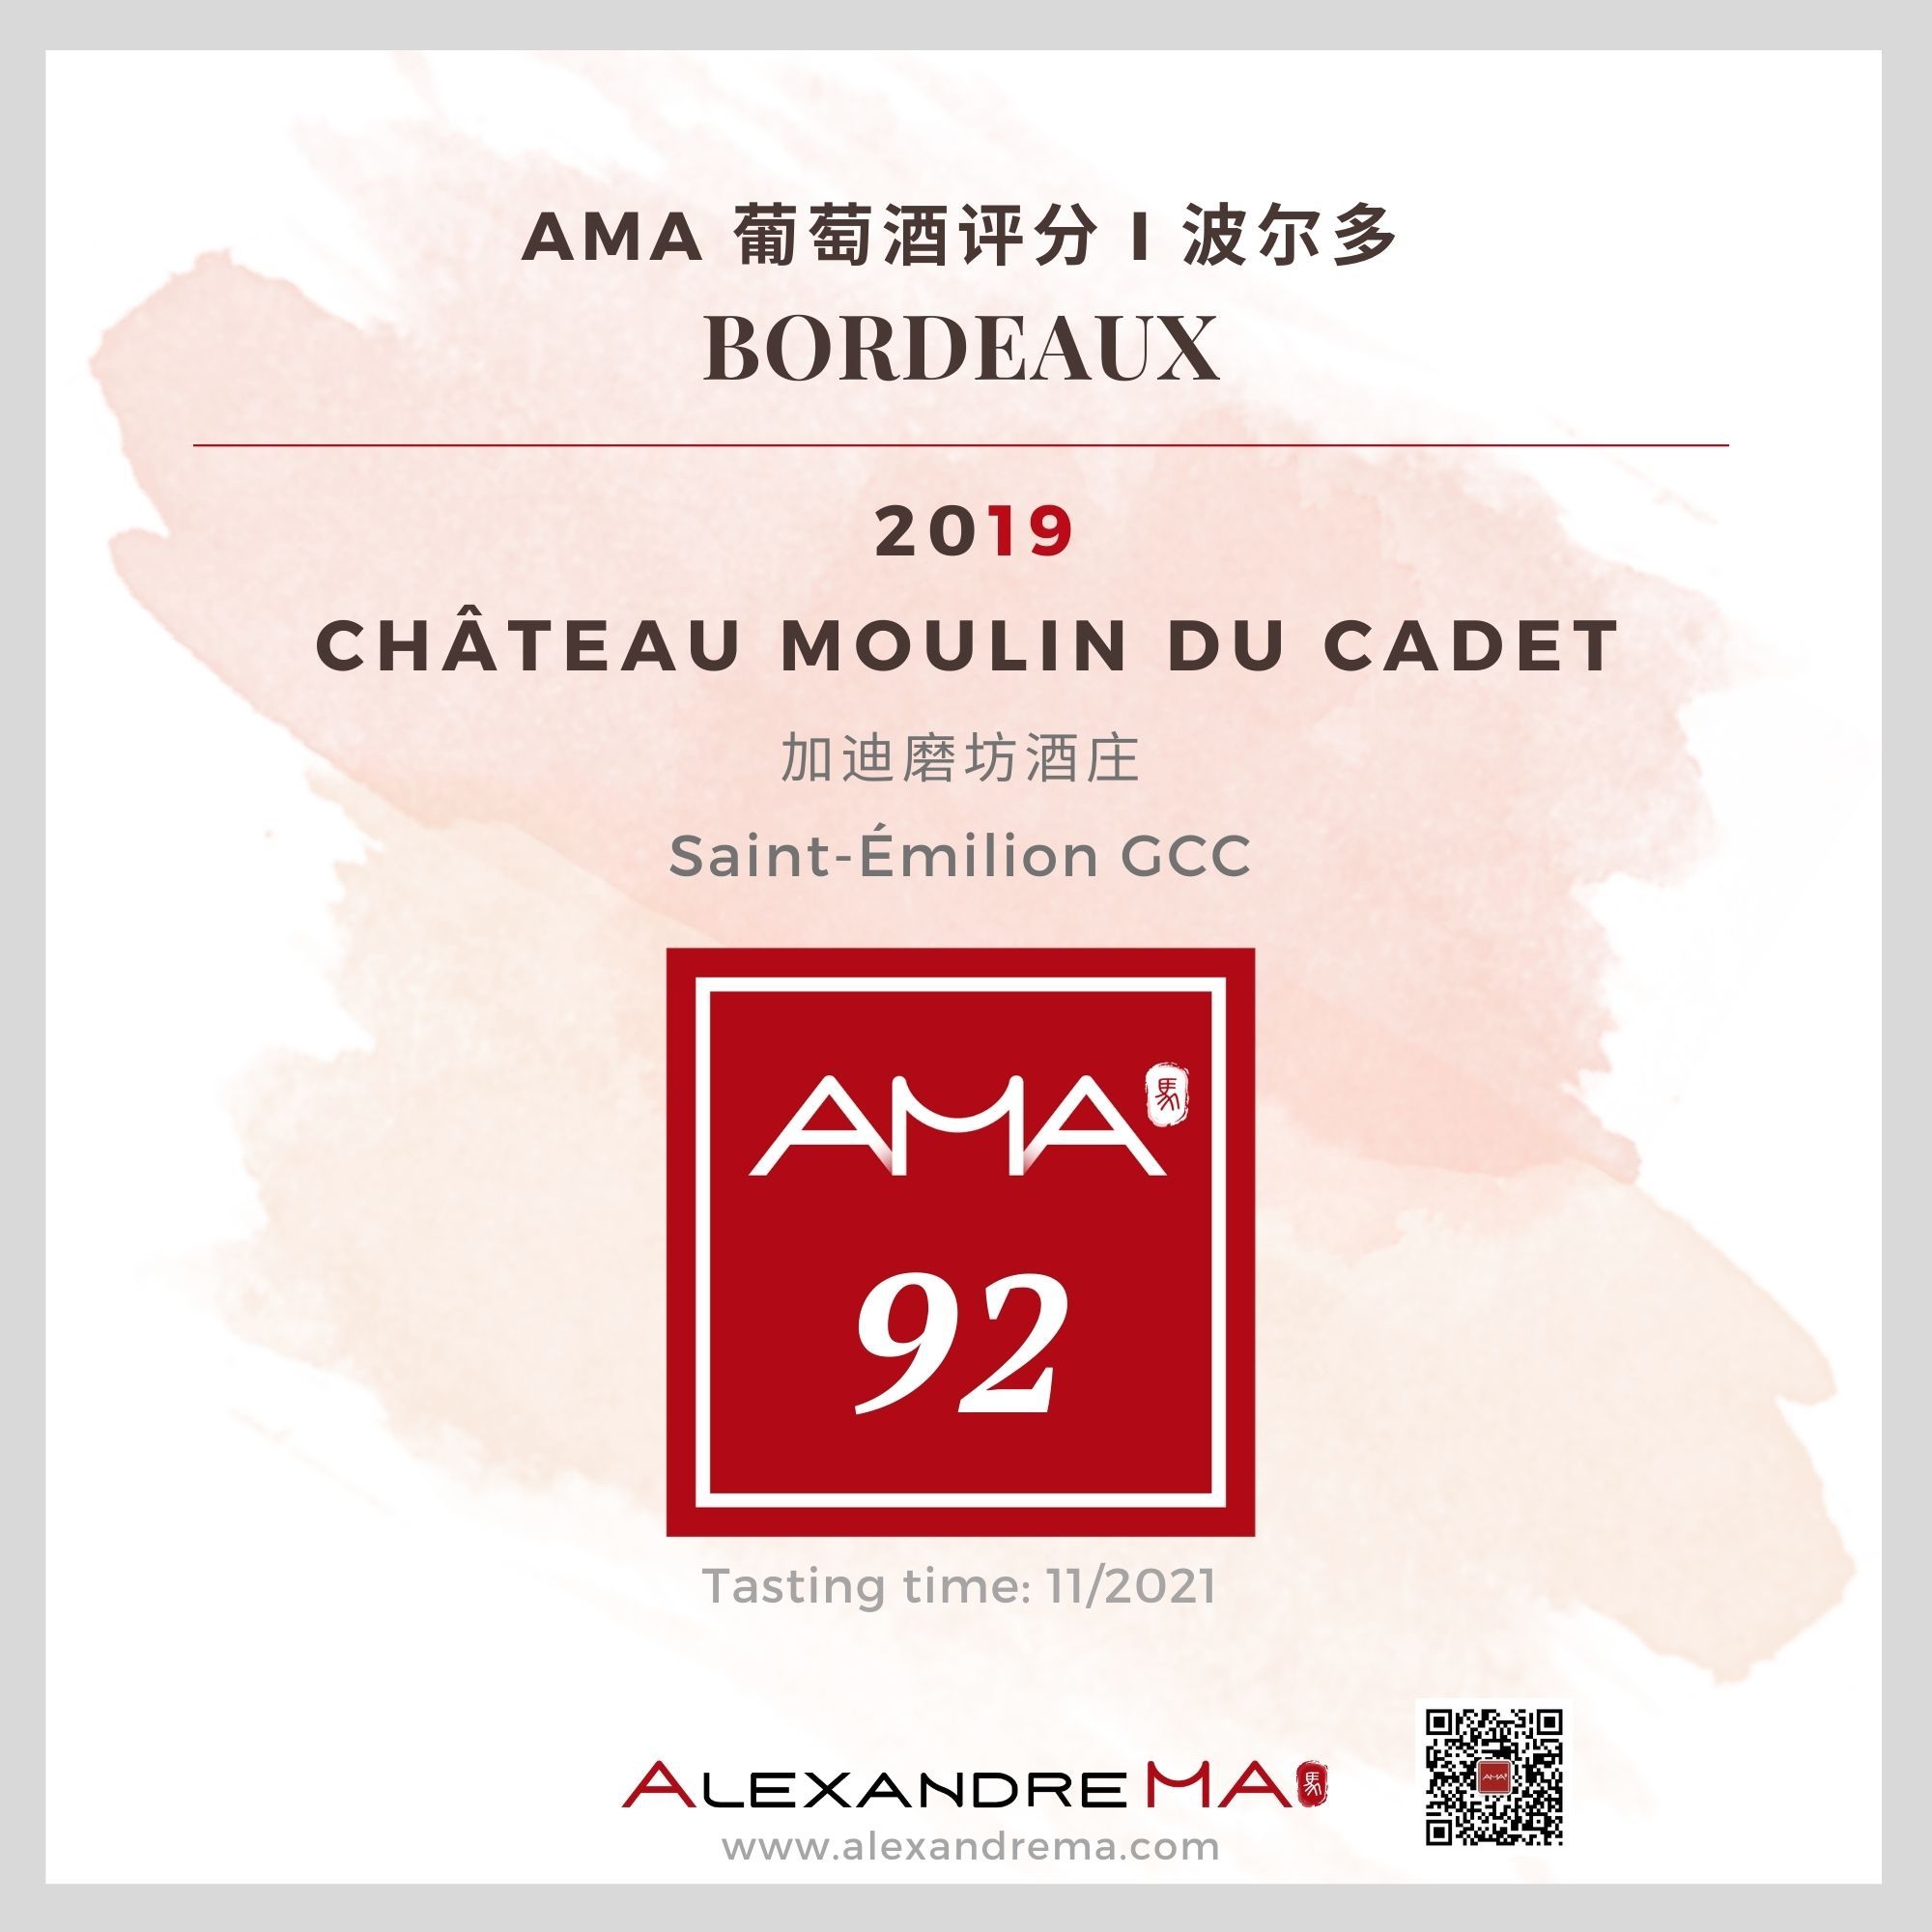 Château Moulin du Cadet 2019 加迪磨坊酒庄 - Alexandre Ma